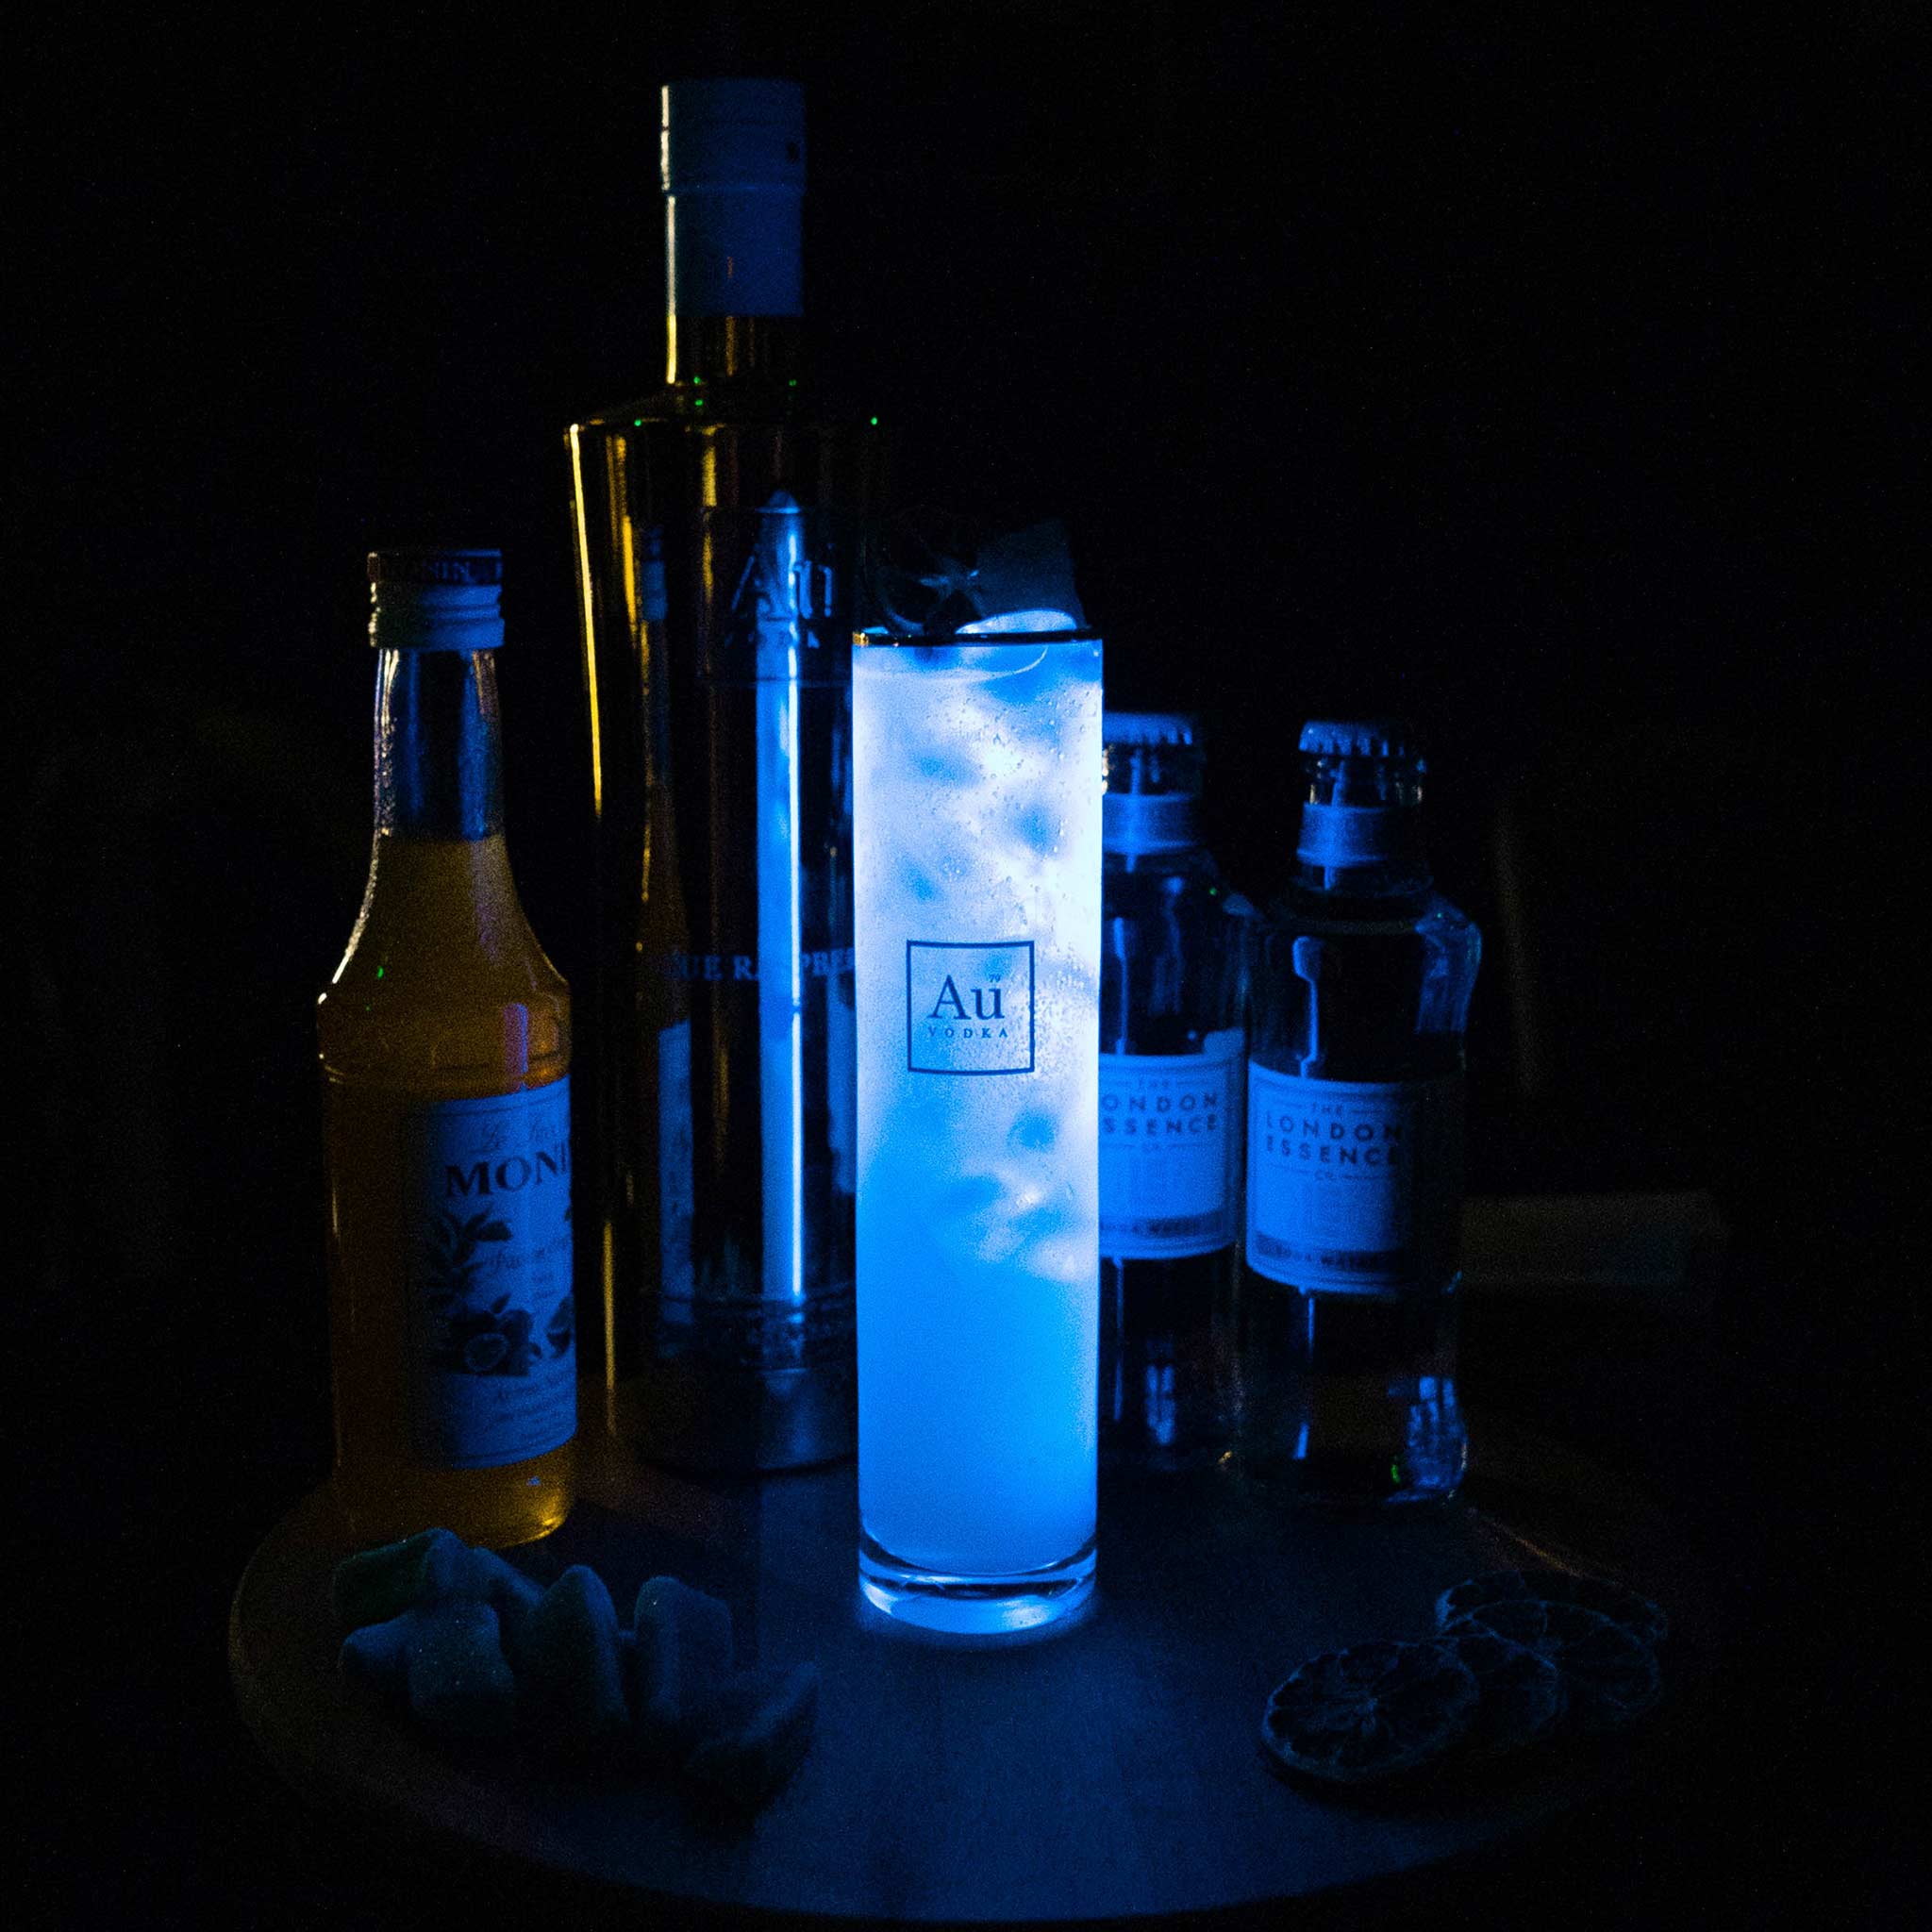 Au Vodka Monthly Cocktail Subscription